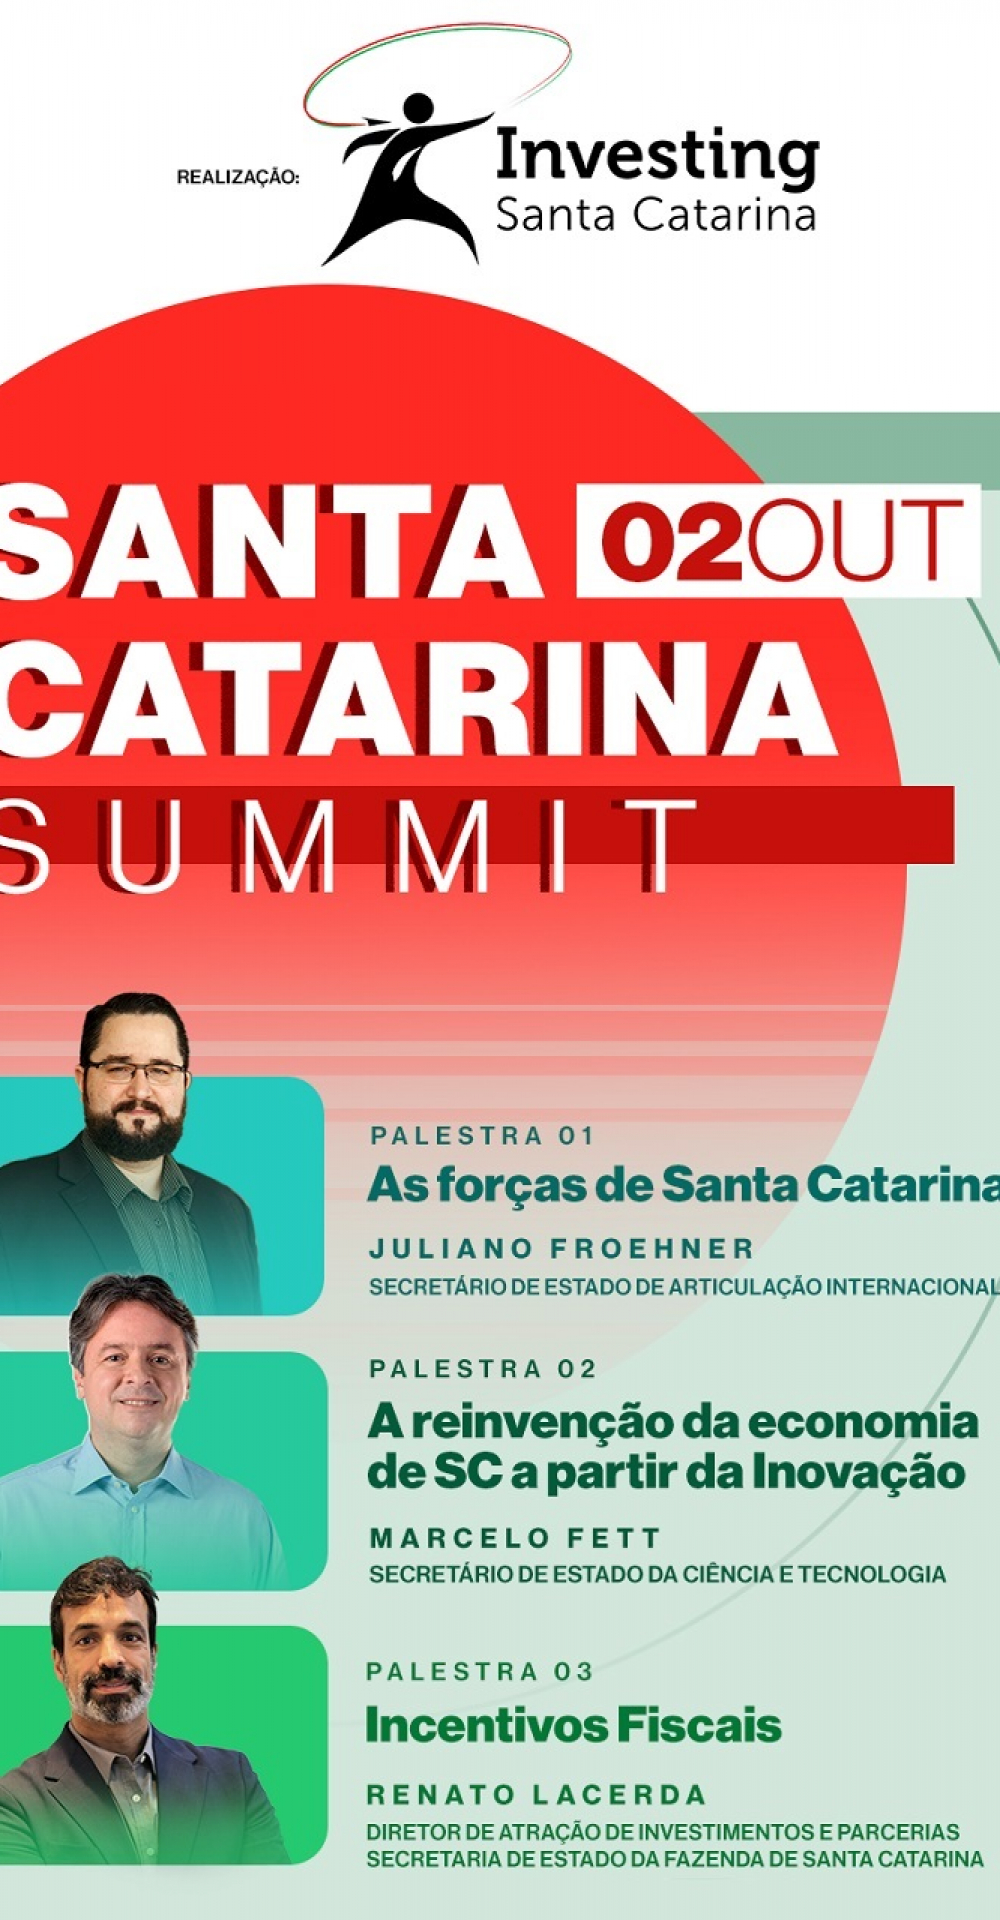 Investing Santa Catarina promove em 02/10 evento em SP para atração de investidores ao Estado